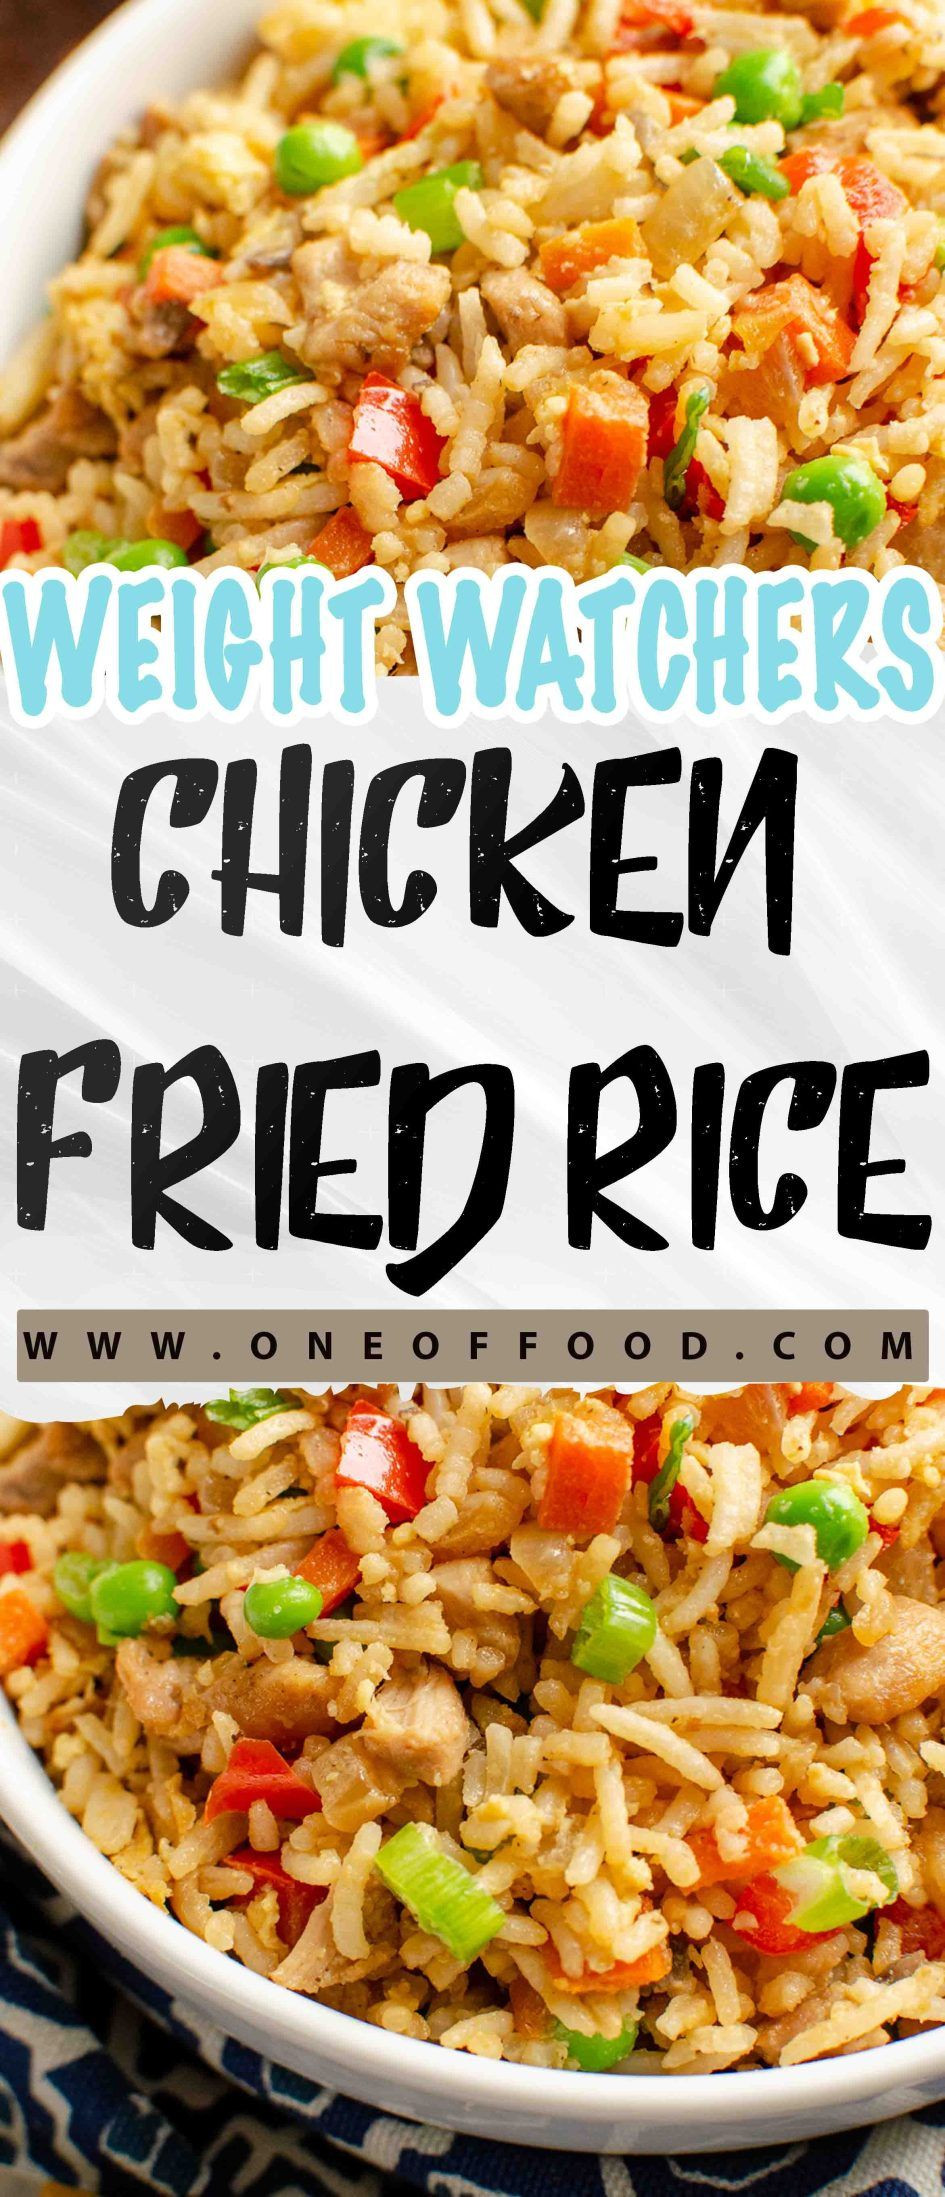 Weight Watchers Fried Chicken
 Weight Watcher’s – e of food